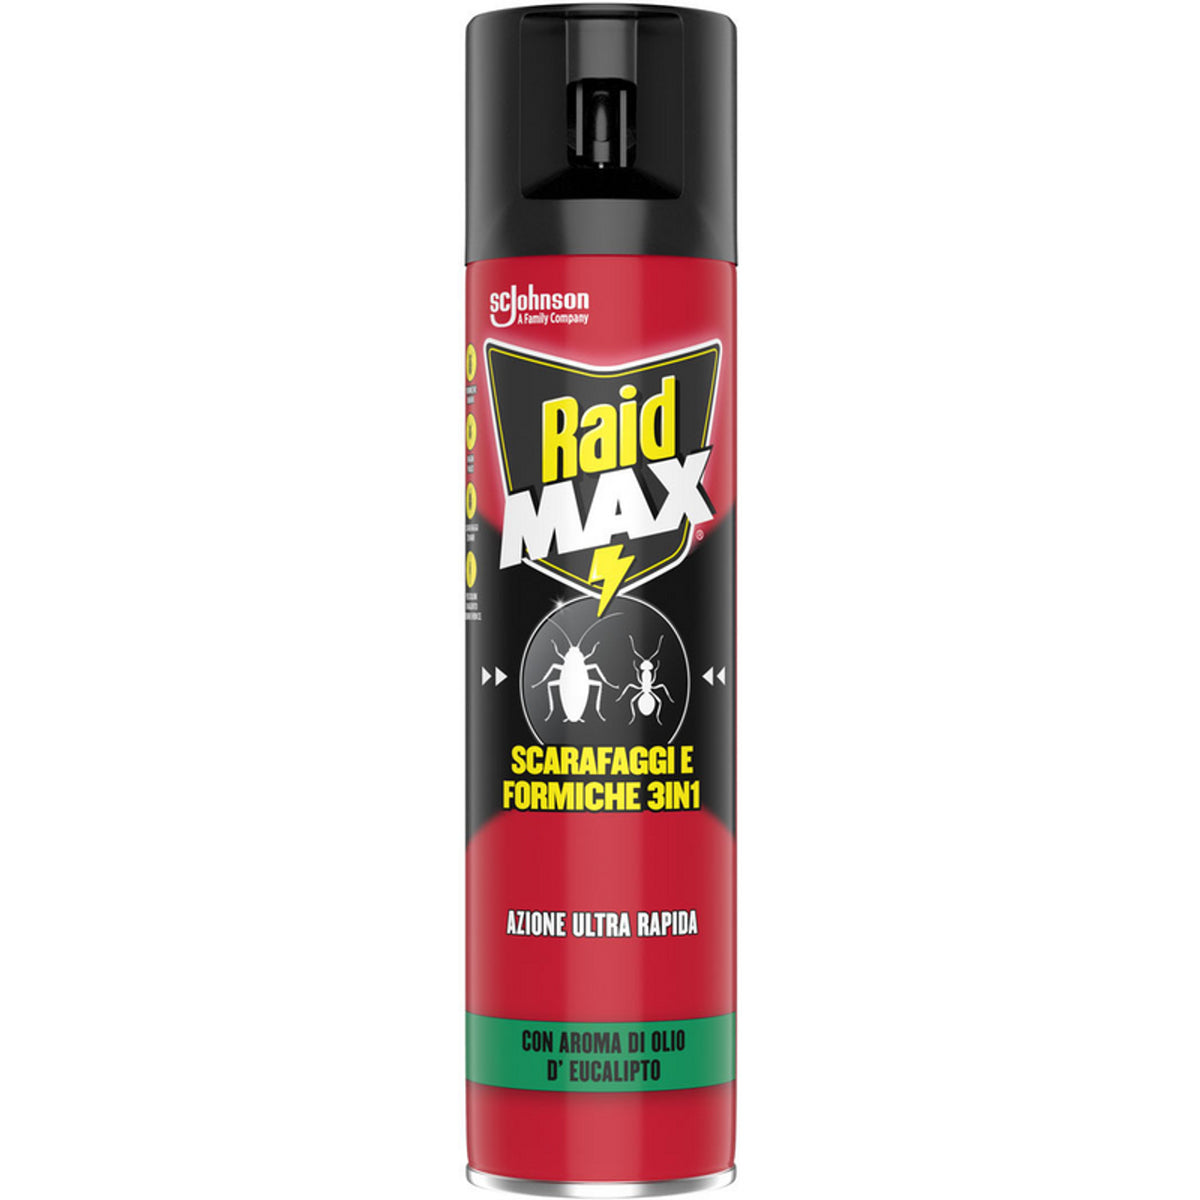 Raid Max Insetticida Spray Scarafaggi E Formiche 3In1 Azione Ultra Rapida Con Aroma Di Olio D'Eucalipto 400 ml